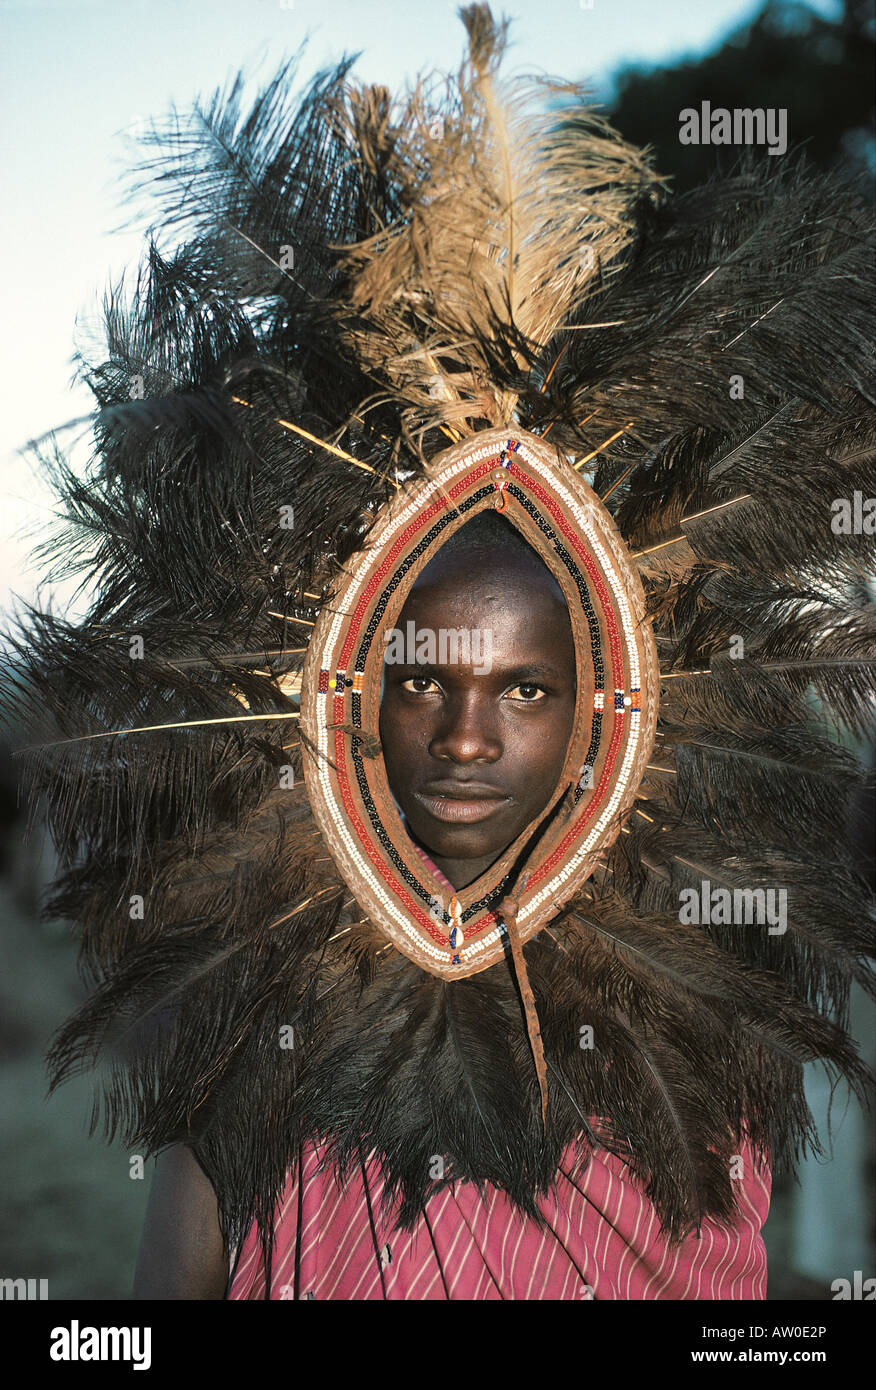 Guerrier moran Maasai portant une coiffe de plumes d'autruche sud du Kenya Afrique de l'Est Banque D'Images